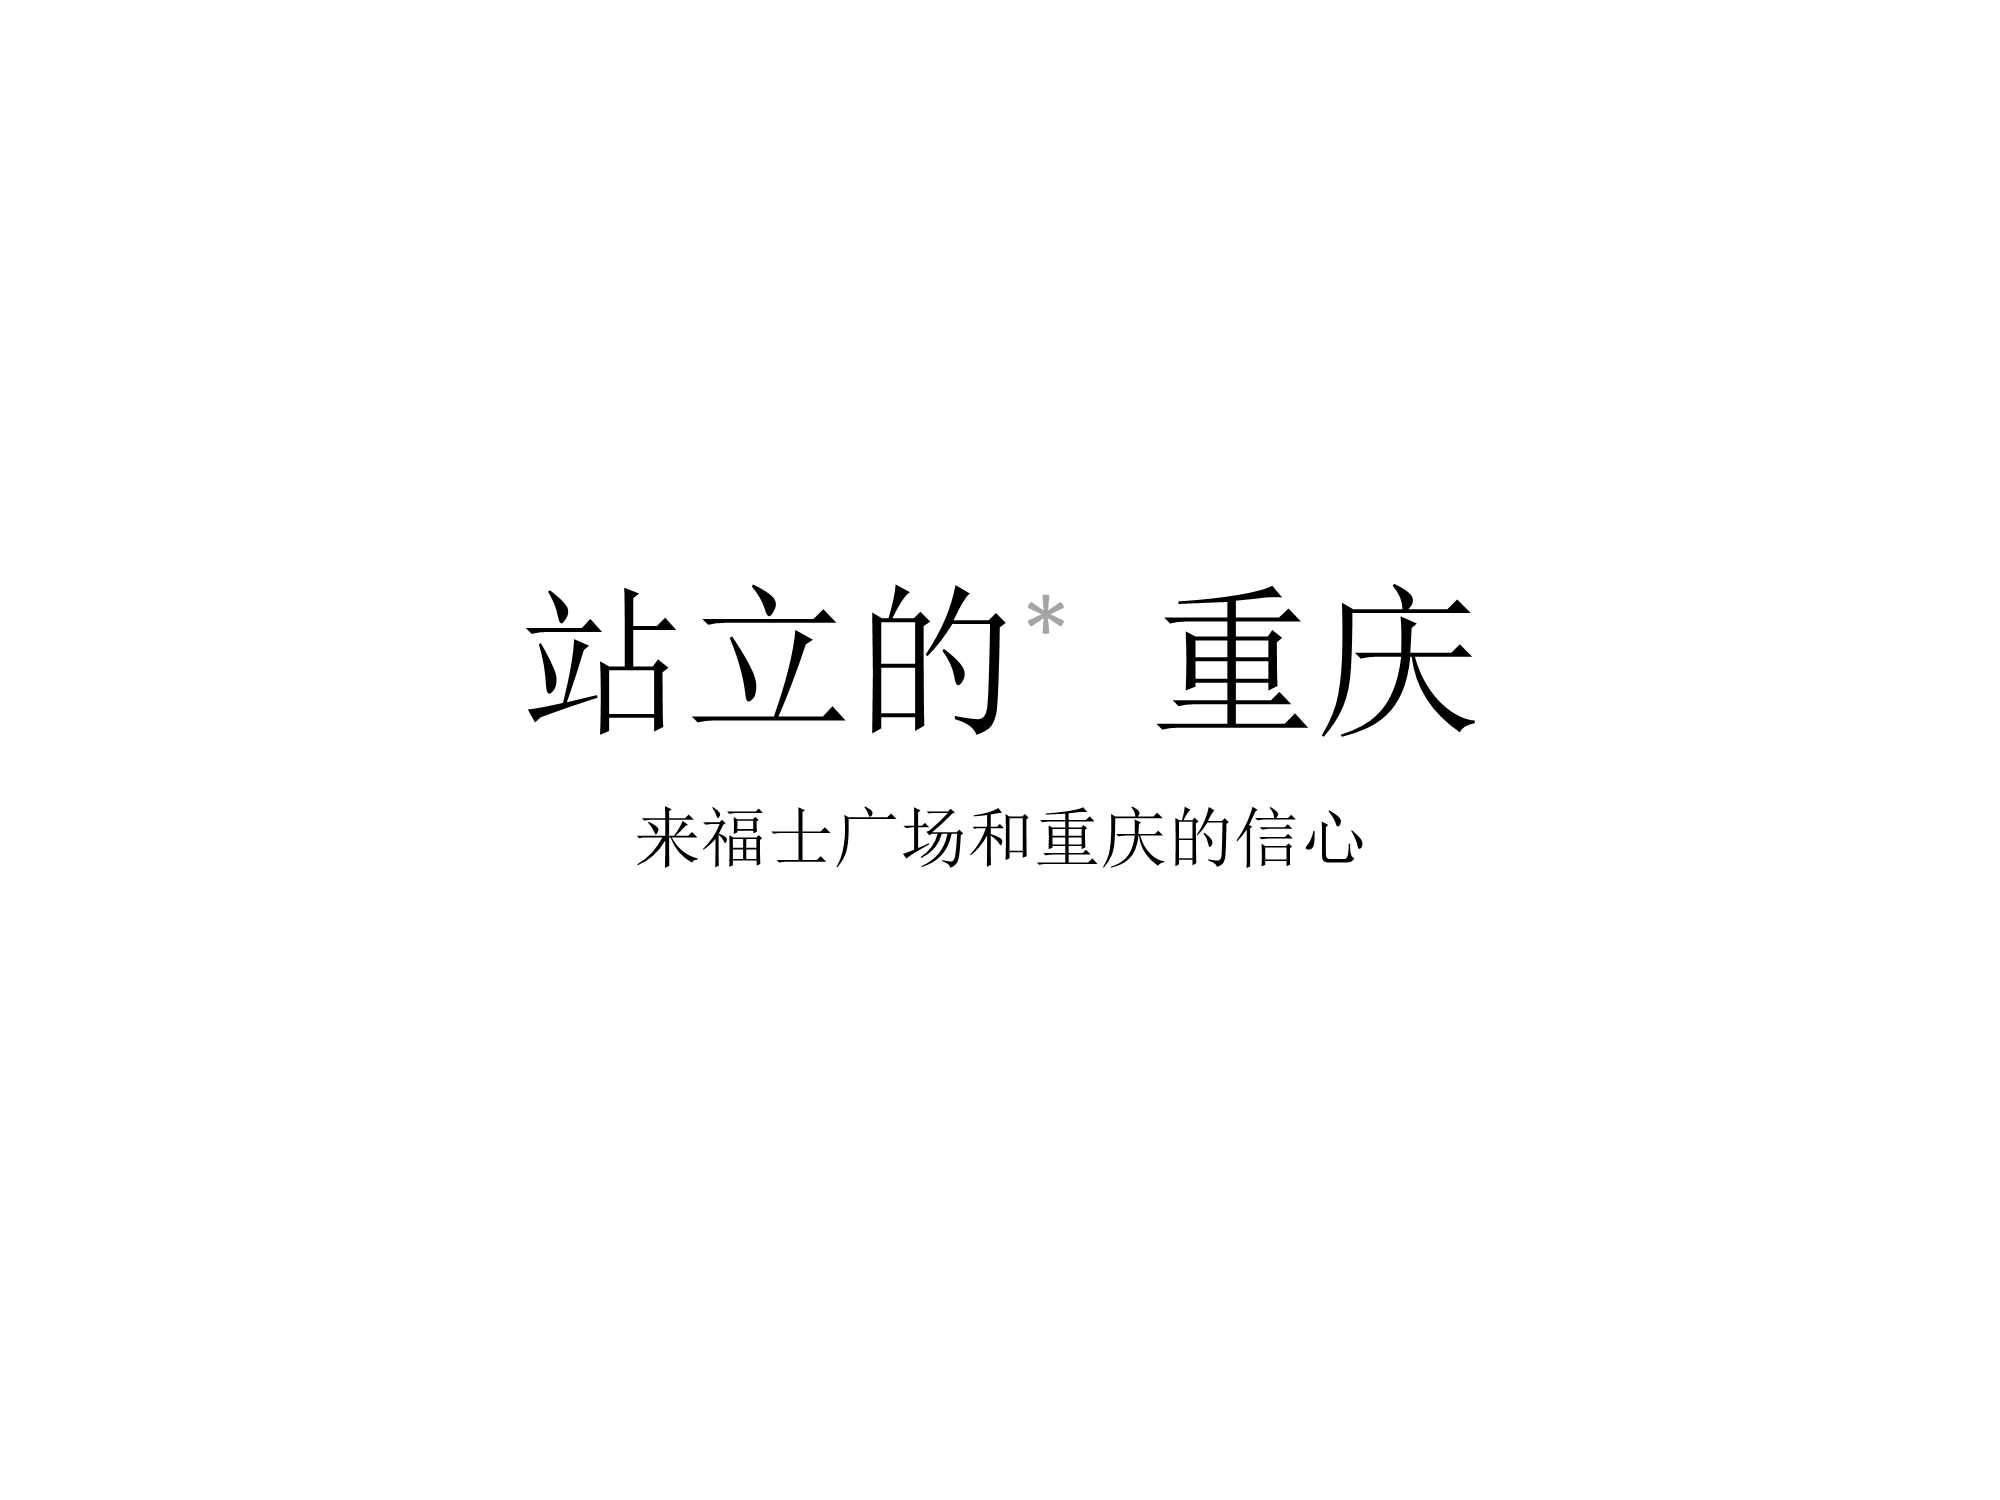 【推广】优点广告-重庆来福士购物广场推广提案【pptx】